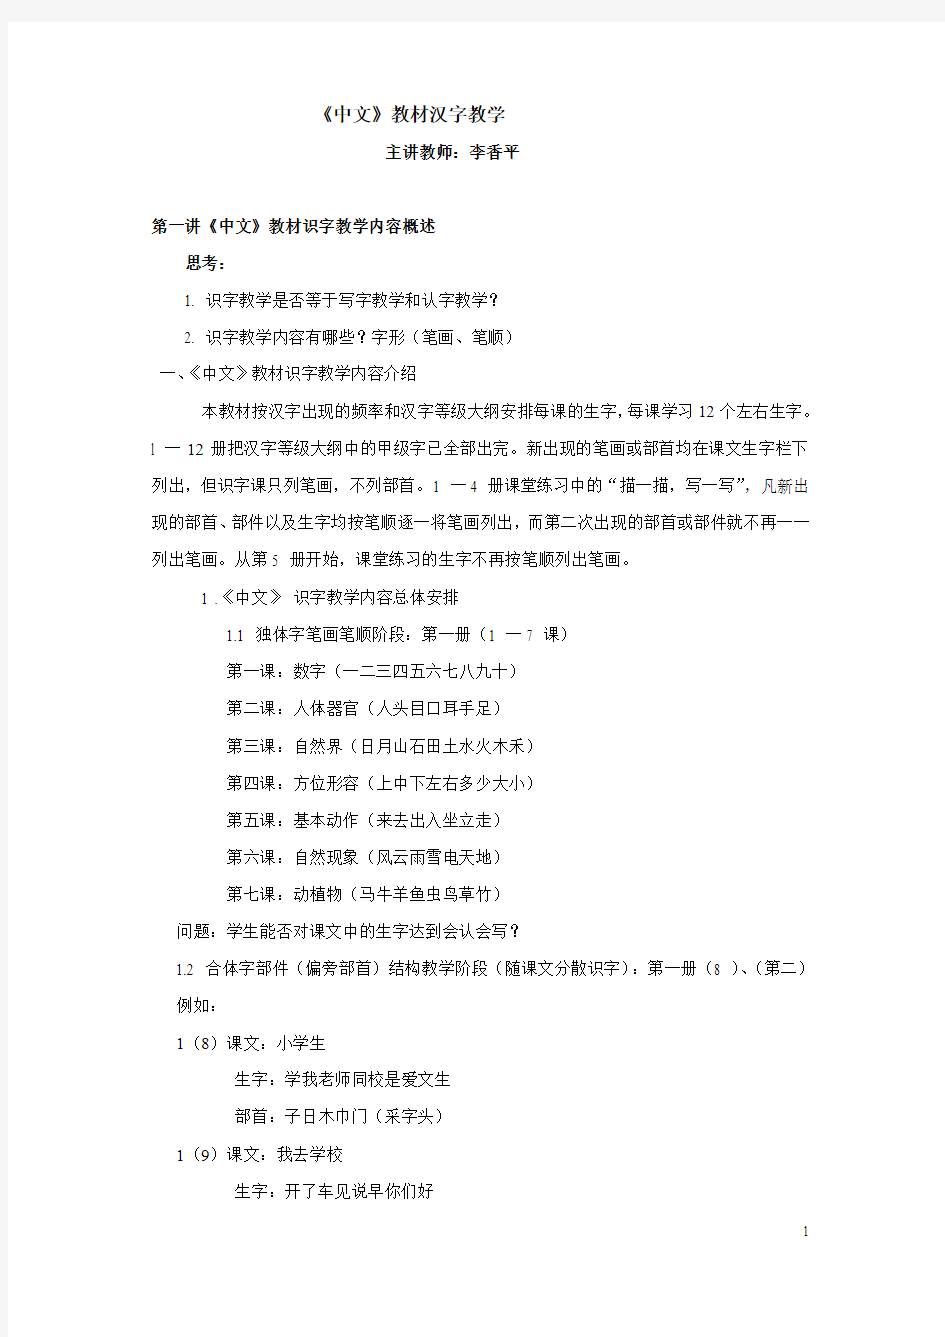 中文教材汉字教学-中国华文教育网